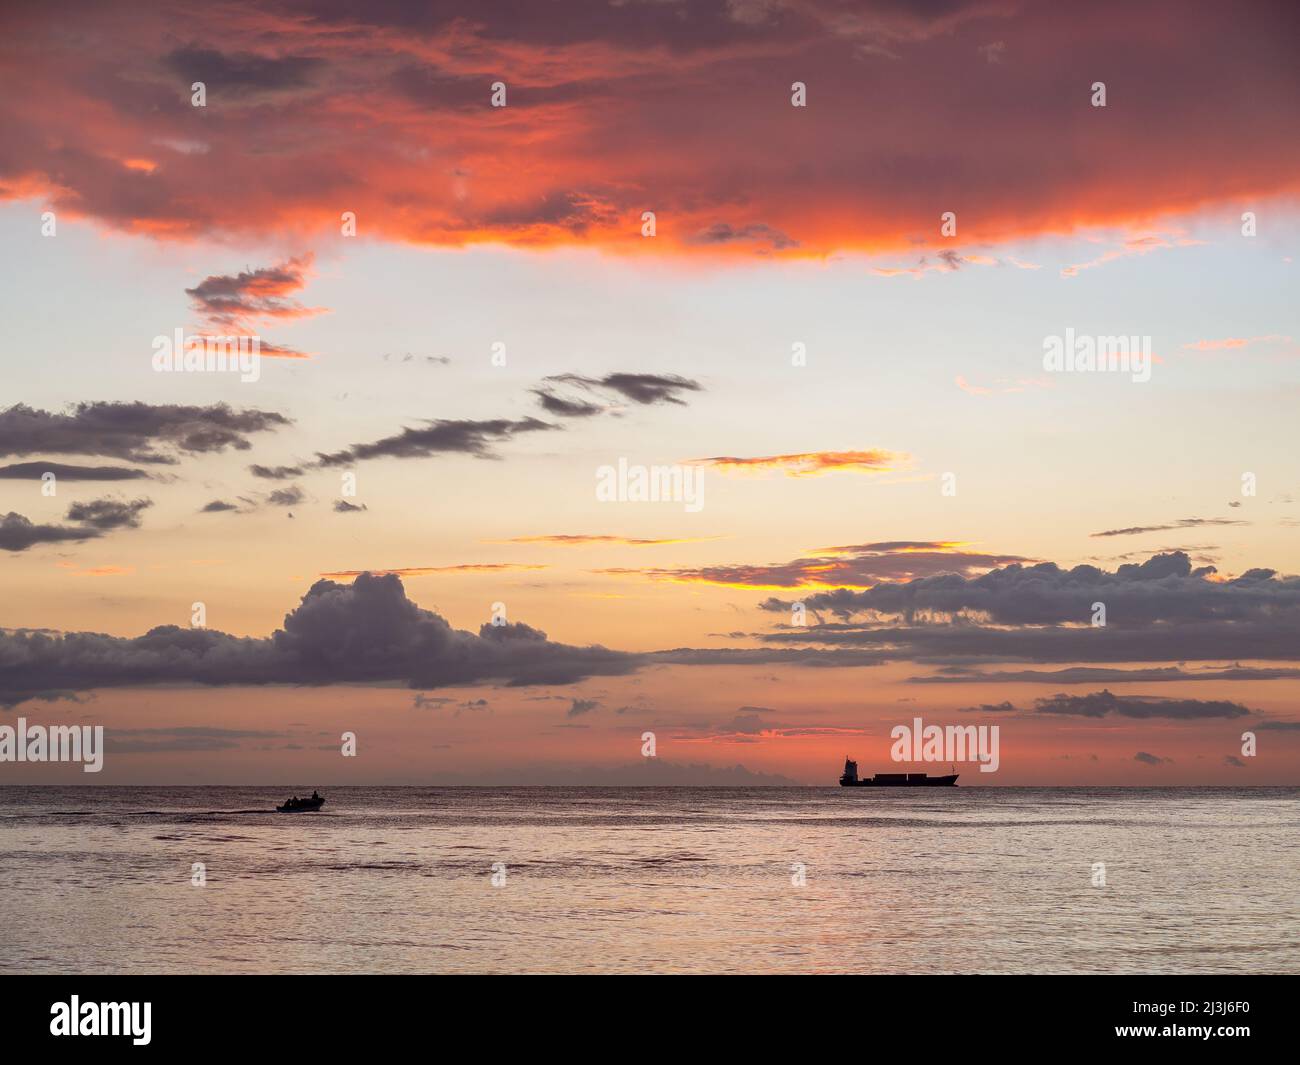 Magnifique coucher de soleil sur la plage avec ciel orange et bleu, vagues de l'océan et un bateau au loin. Banque D'Images